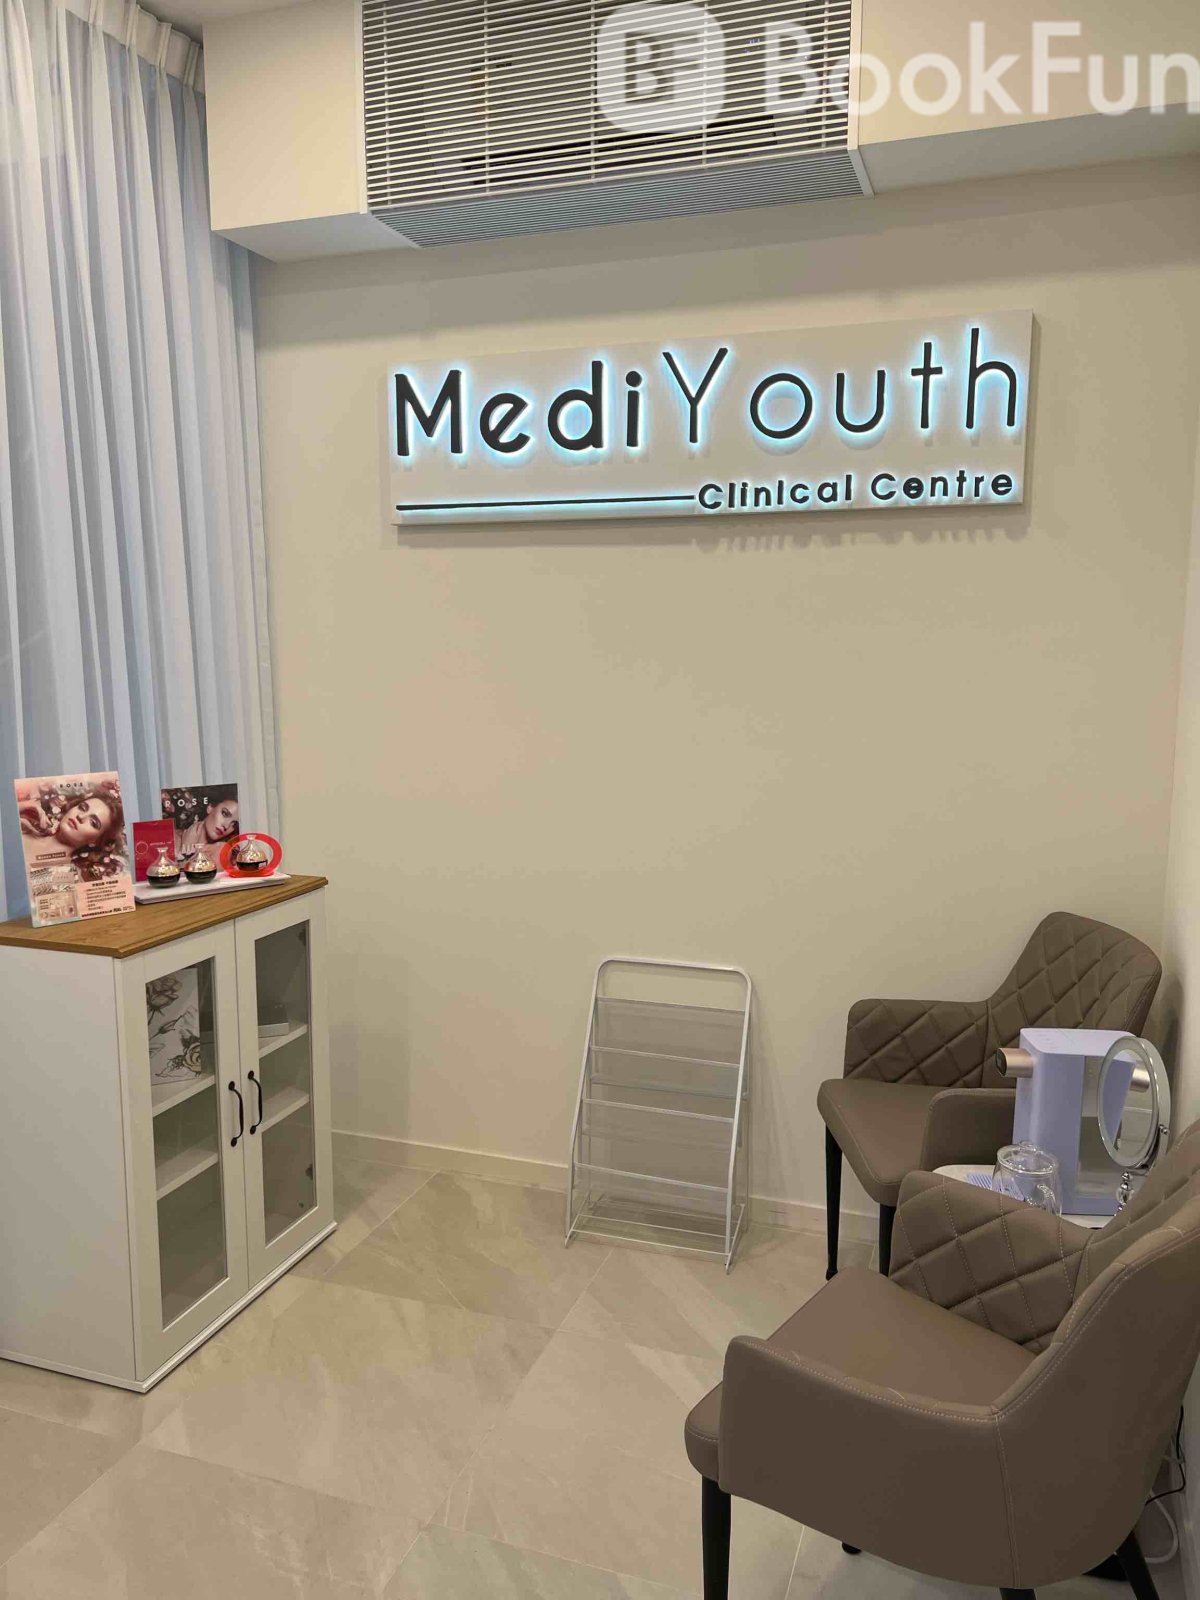 MediYouth Clinical Centre (Central)